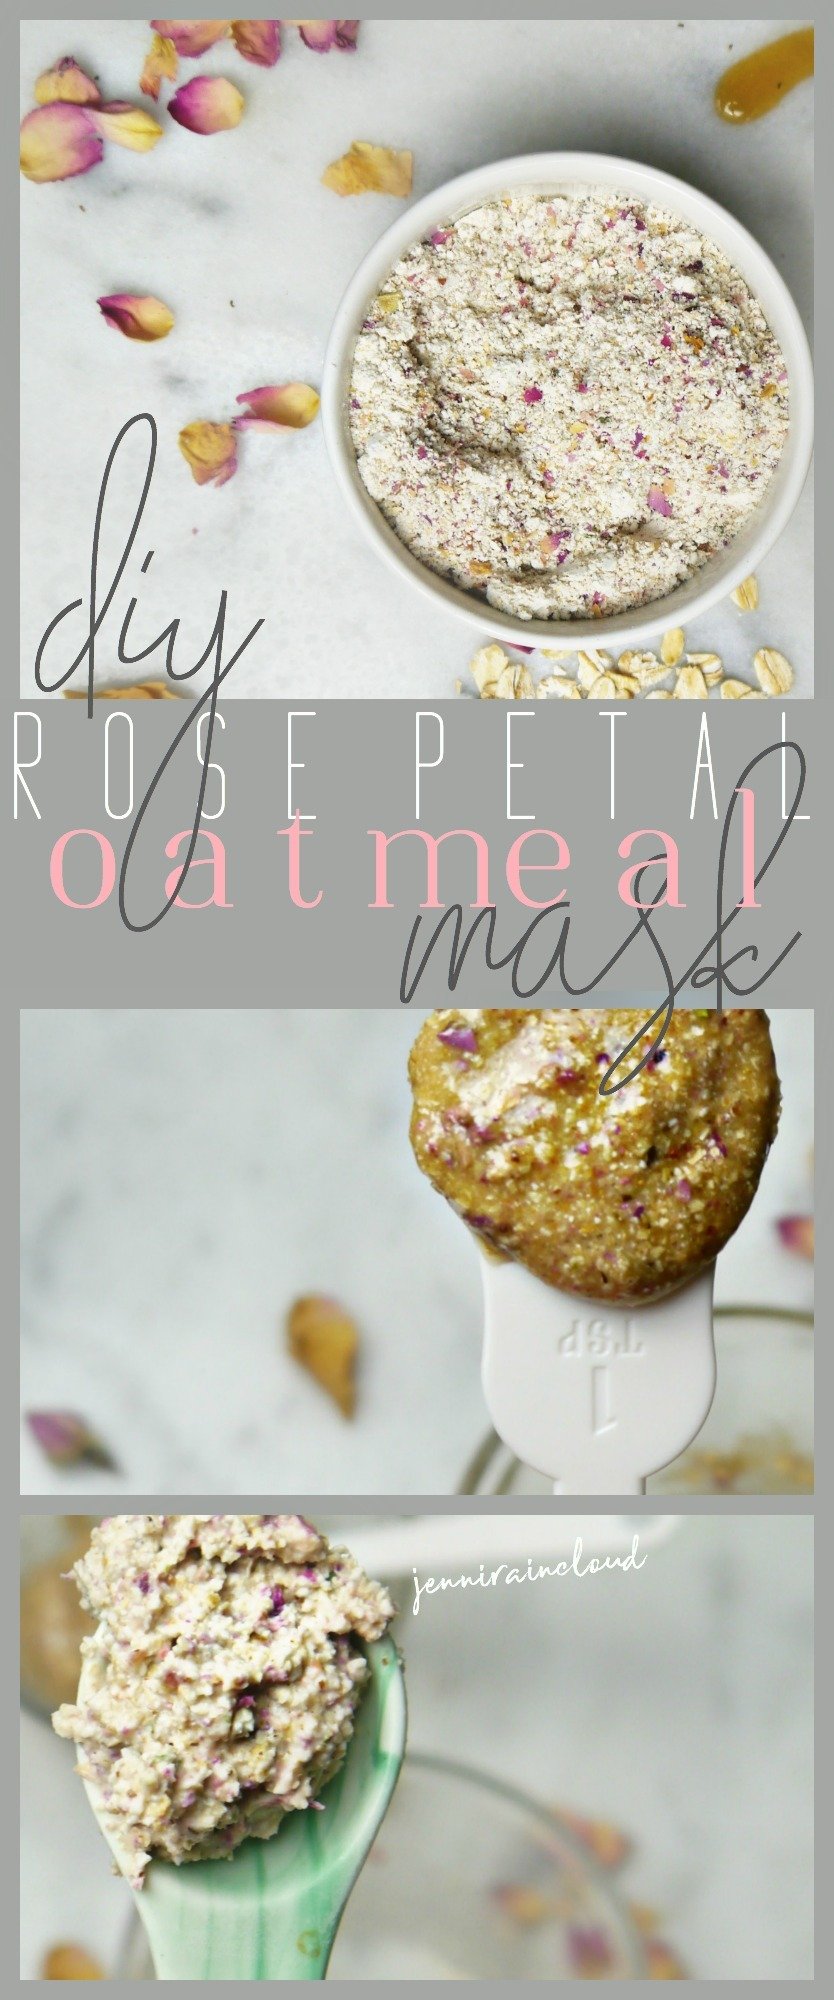 Rose Petal Oatmeal Masks